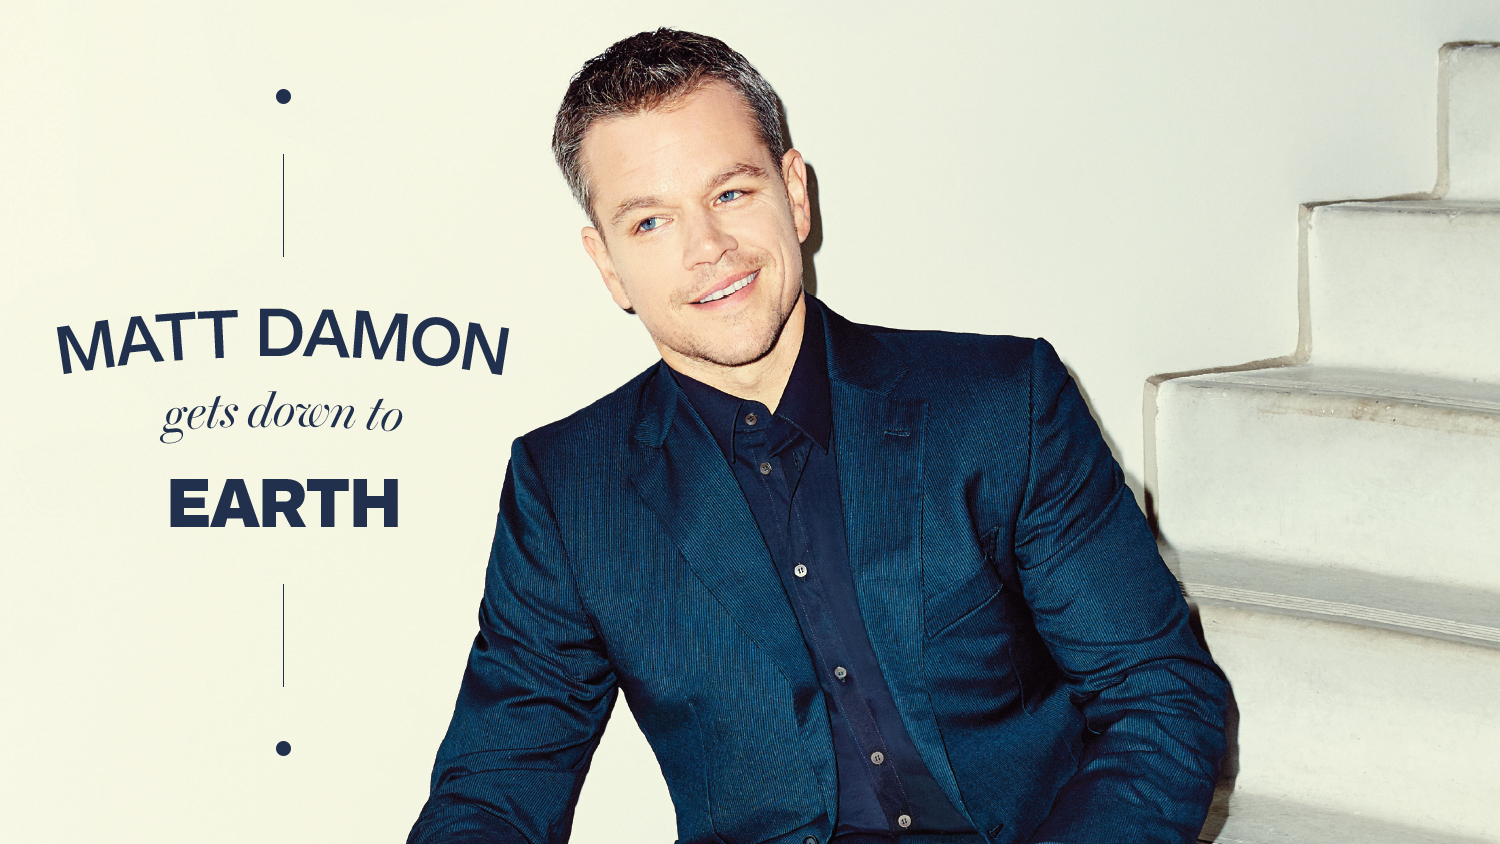 Matt Damon Poses for The Hollywood Reporter, Talks Bourne Franchise